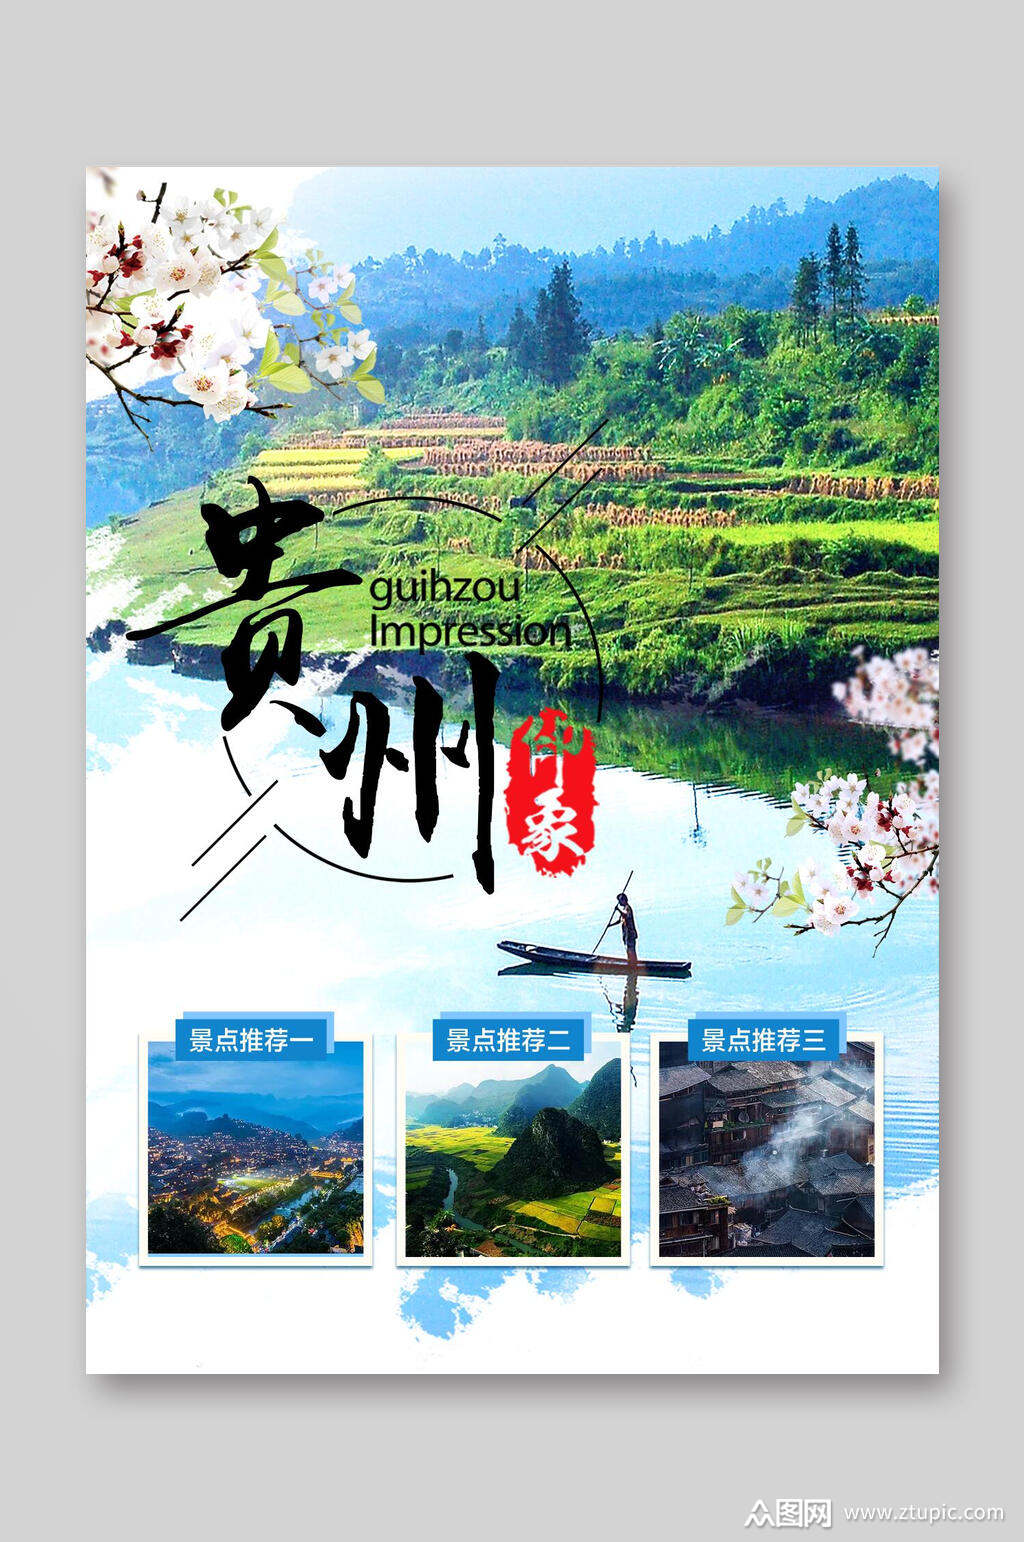 贵州印象宣传单旅游宣传单素材